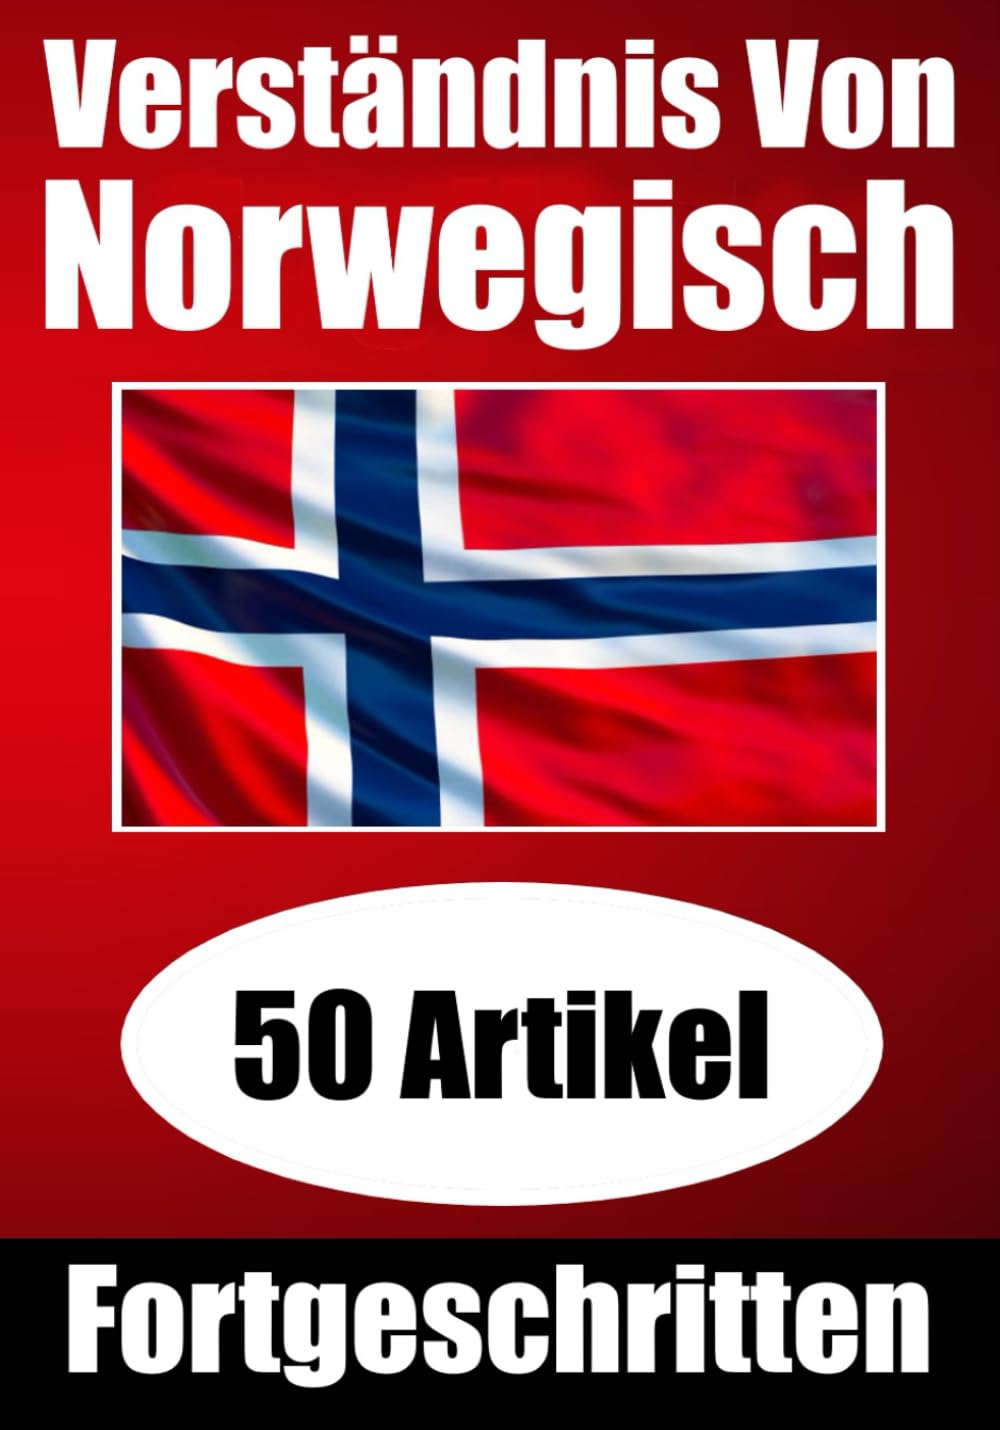 Verständnis von Norwegisch